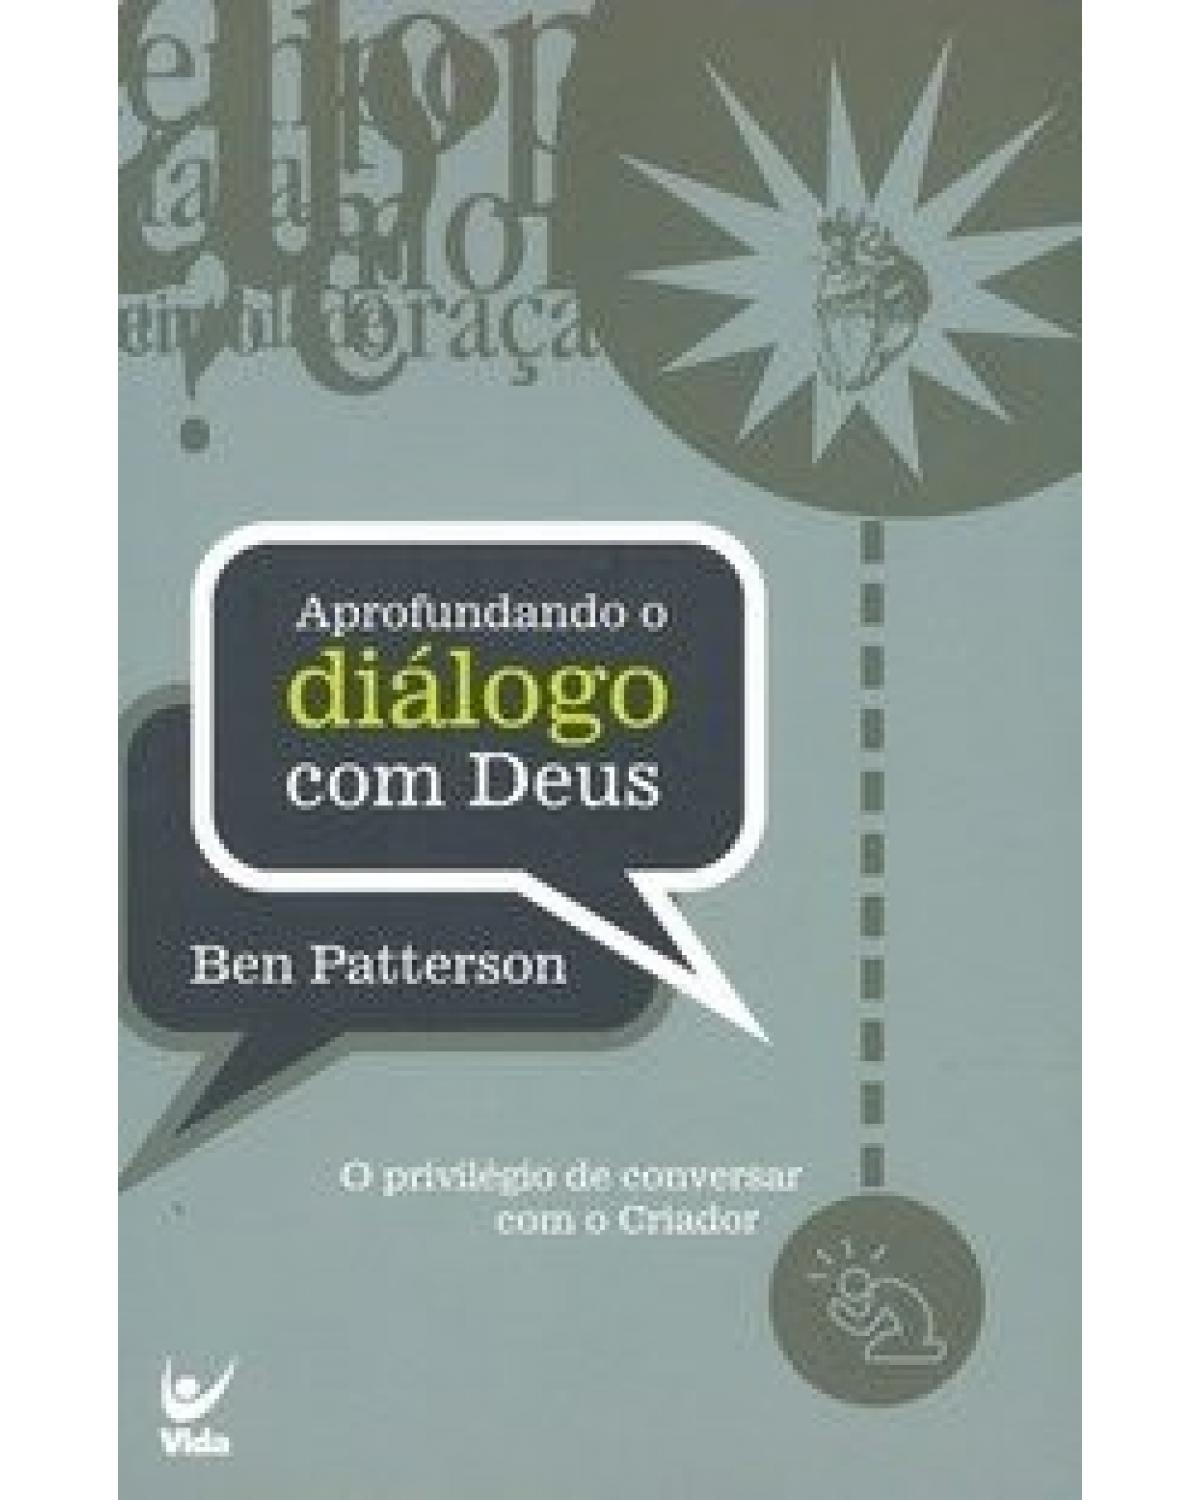 Aprofundando o diálogo com Deus - o privilégio de conversar com o Criador - 1ª Edição | 2004